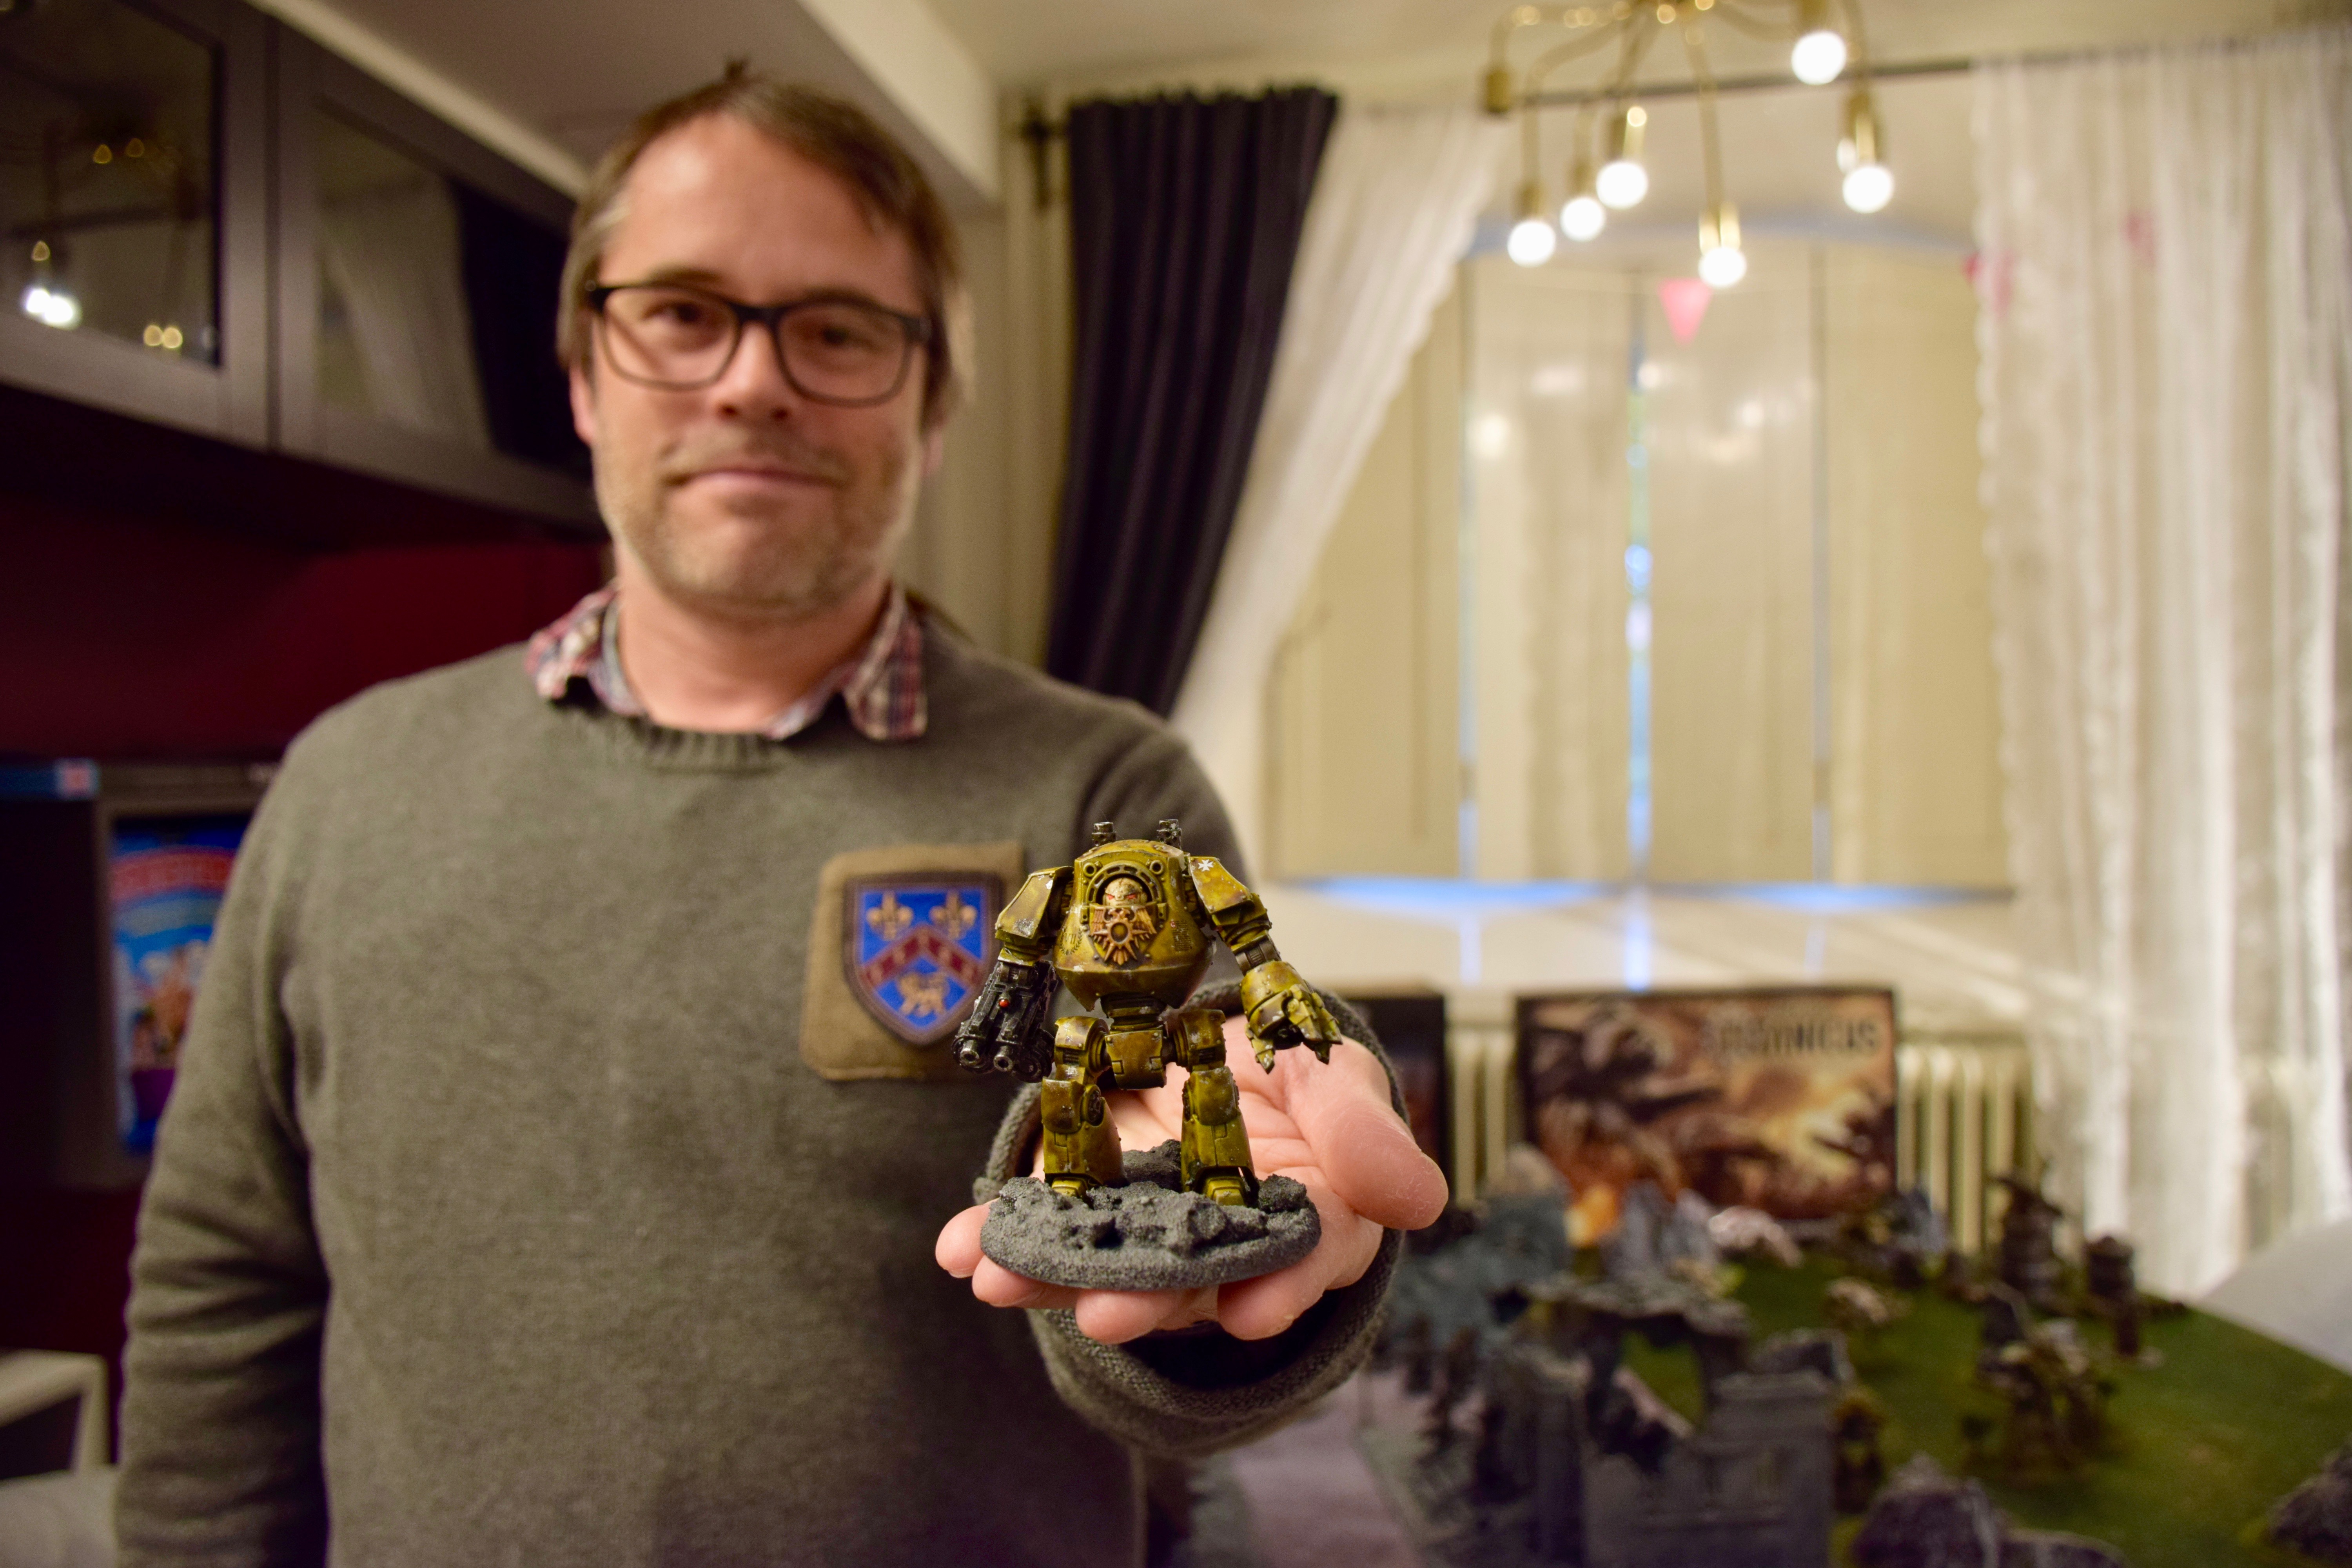 Fredrik Löfqvist håller fram en spelfigur. Fredik är klädd i en grön tröja med ett emblem, han har glasögon och kortklippt brunt hår. 